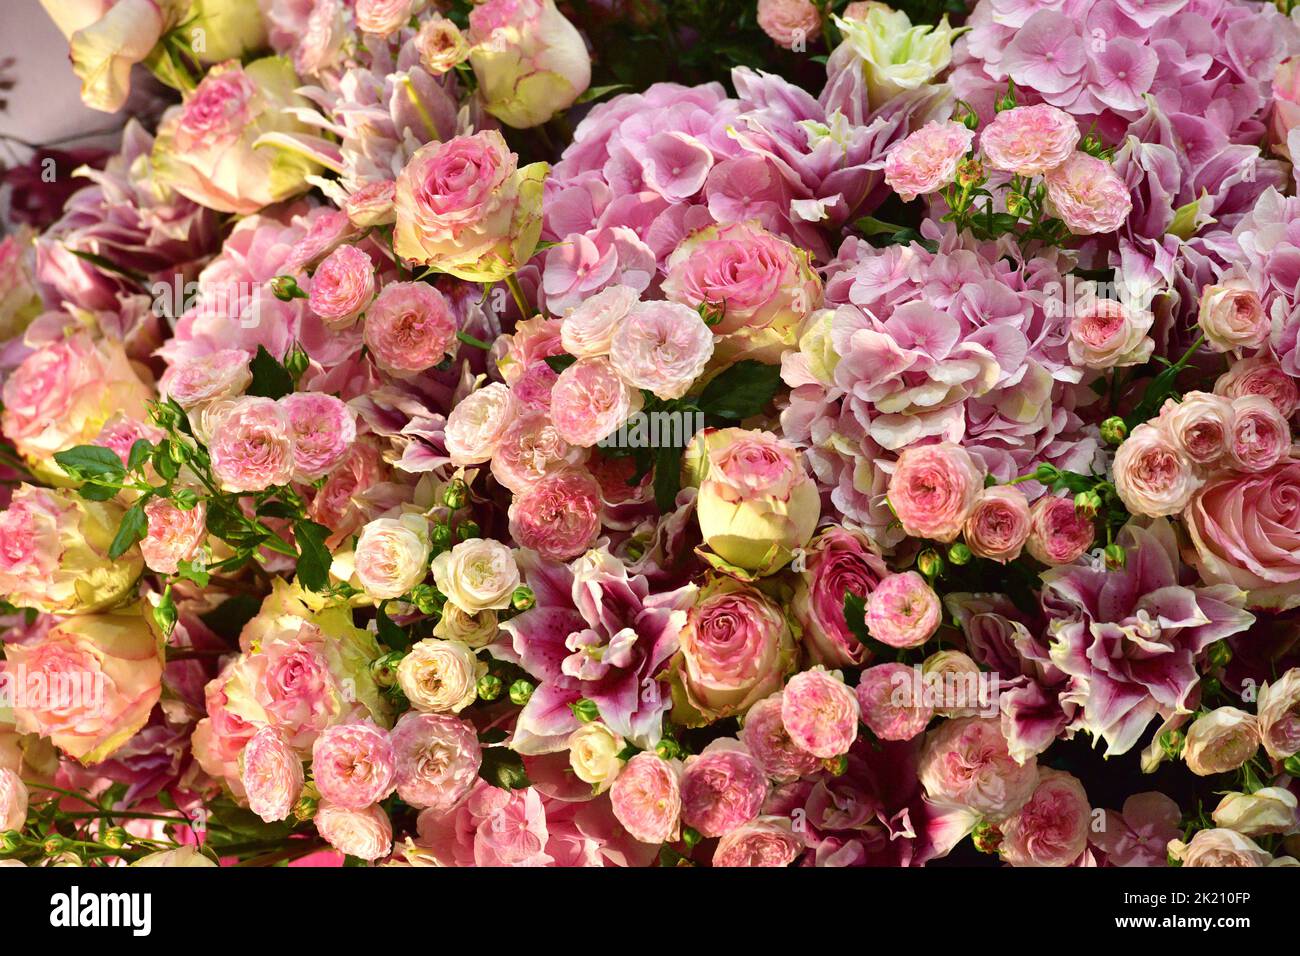 Ramo grande de rosas rosadas en una feria Foto de stock